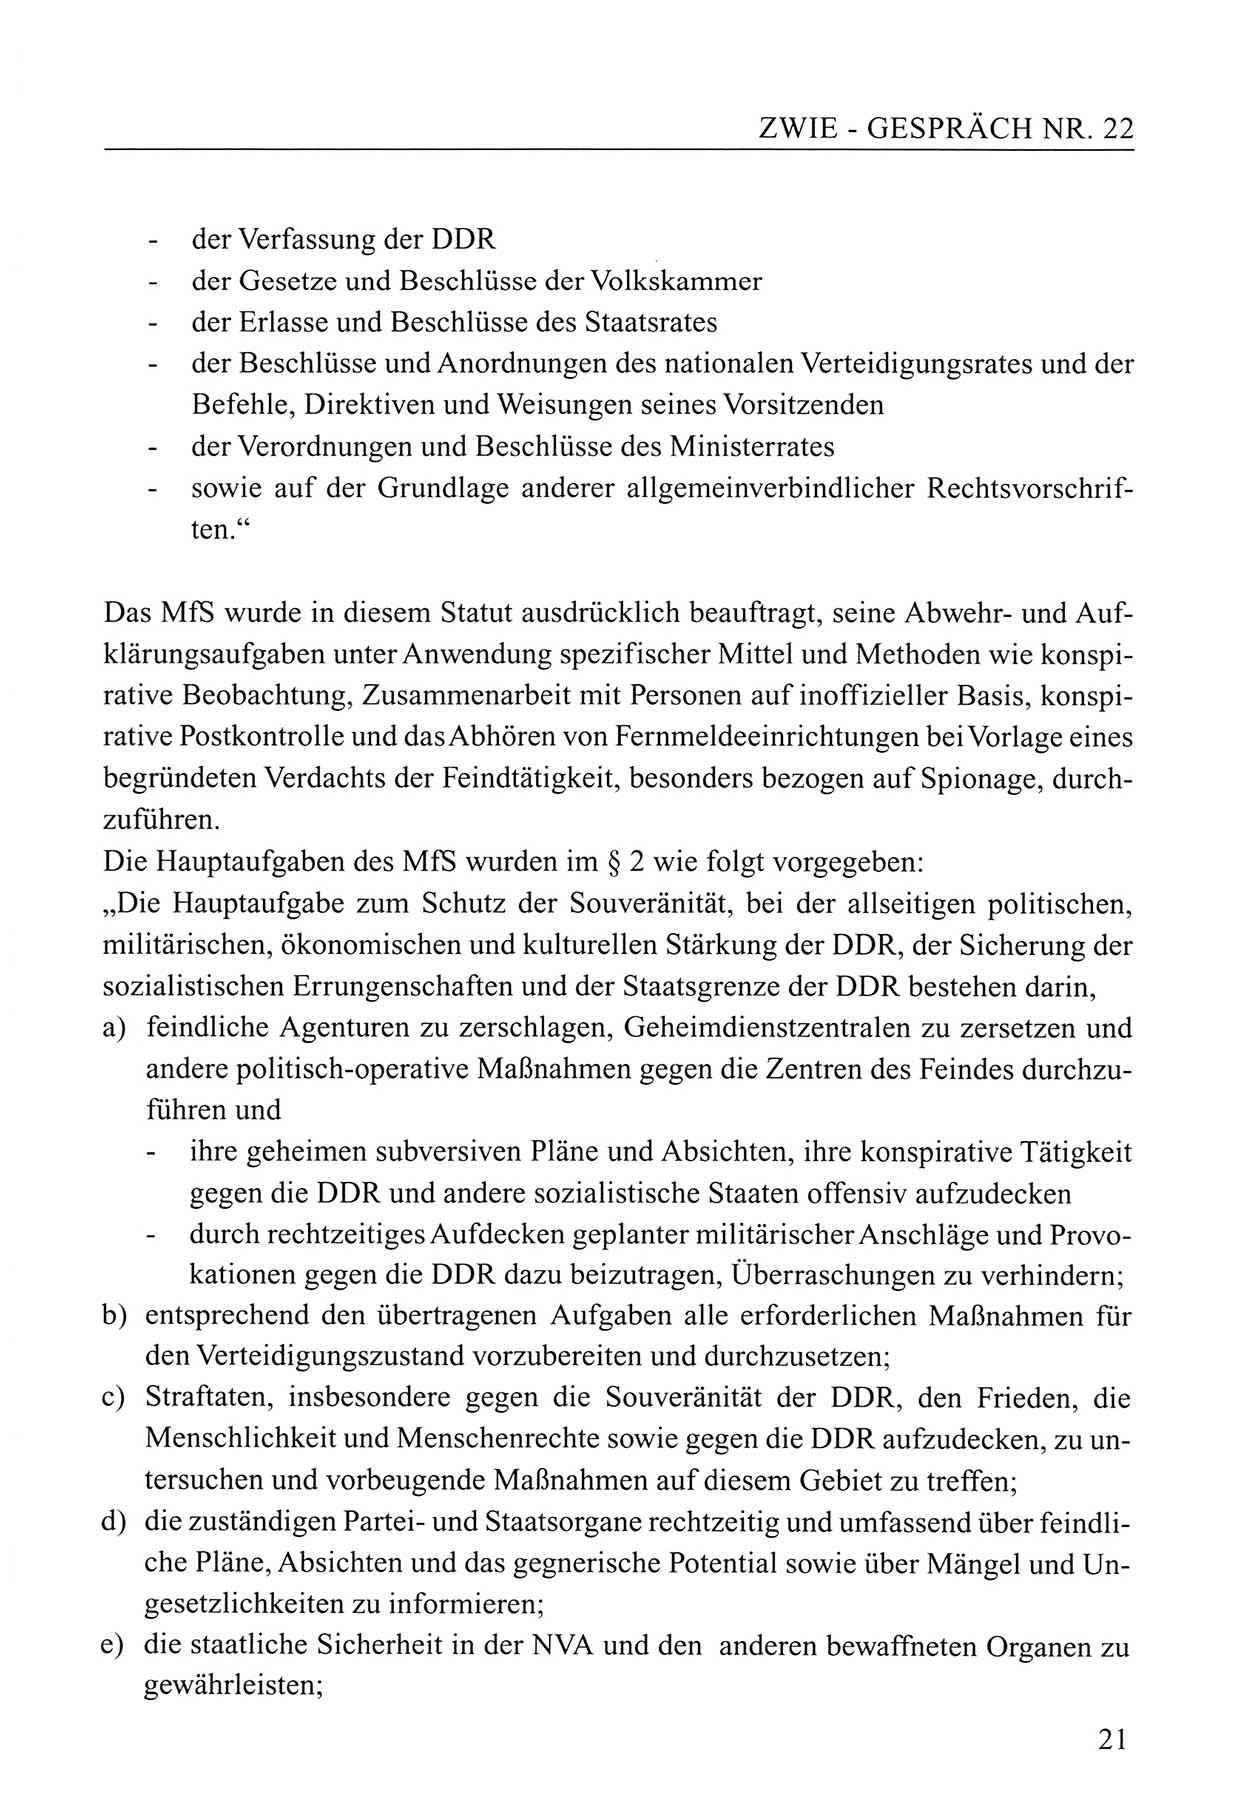 Zwie-Gespräch, Beiträge zum Umgang mit der Staatssicherheits-Vergangenheit [Deutsche Demokratische Republik (DDR)], Ausgabe Nr. 22, Berlin 1994, Seite 21 (Zwie-Gespr. Ausg. 22 1994, S. 21)